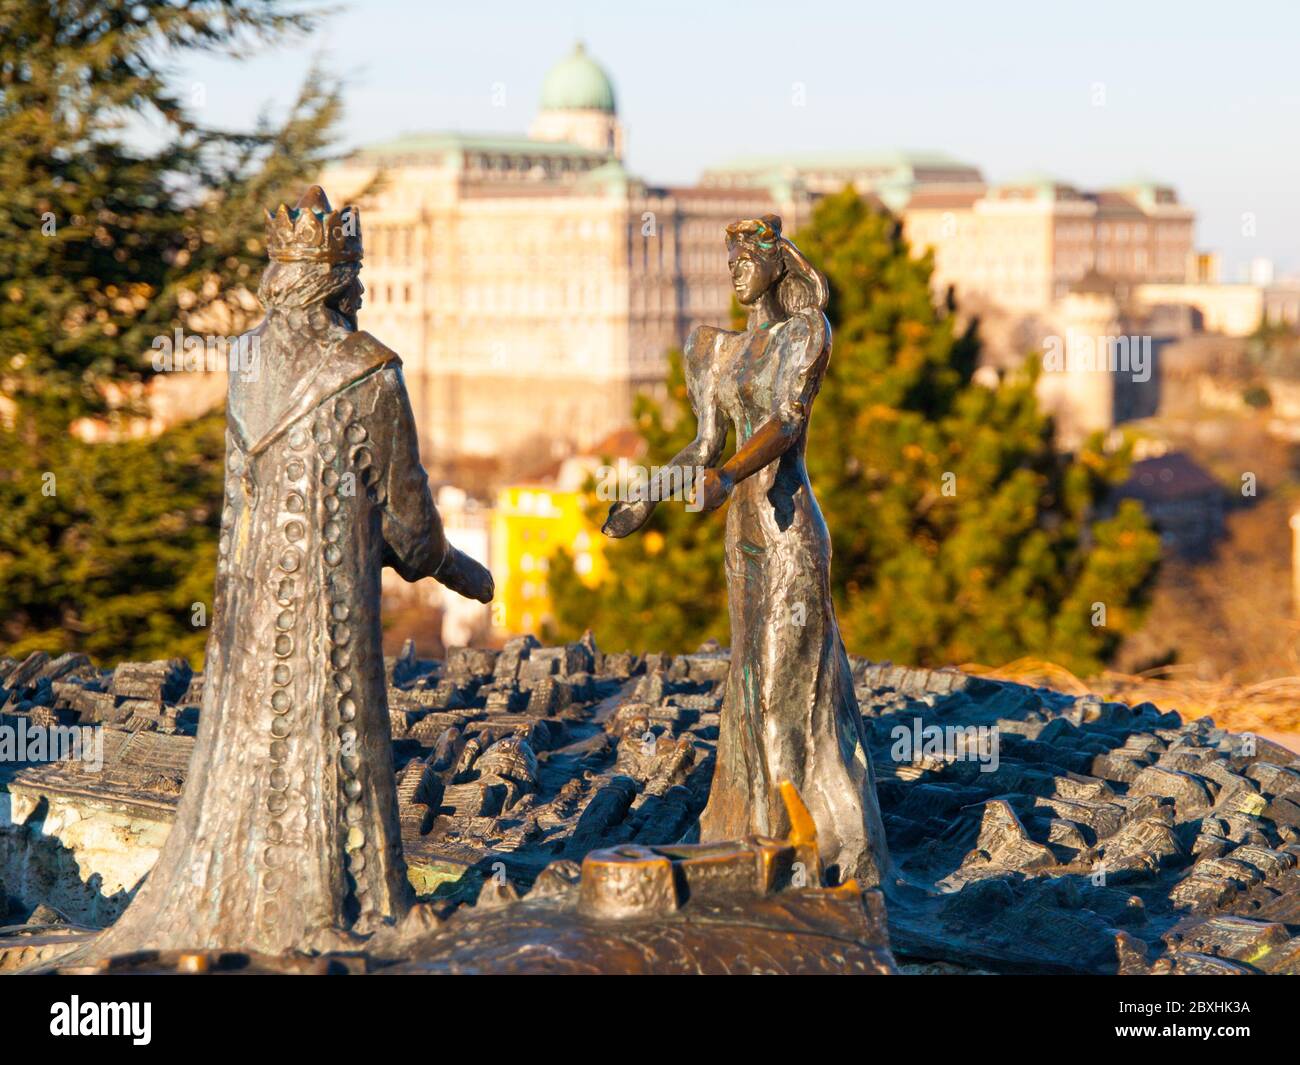 BUDAPEST, HONGRIE - 3 DÉCEMBRE 2016 : statue en bronze du roi Buda et de la reine Pest sur la colline Gellert, Budapest, Hongrie Banque D'Images